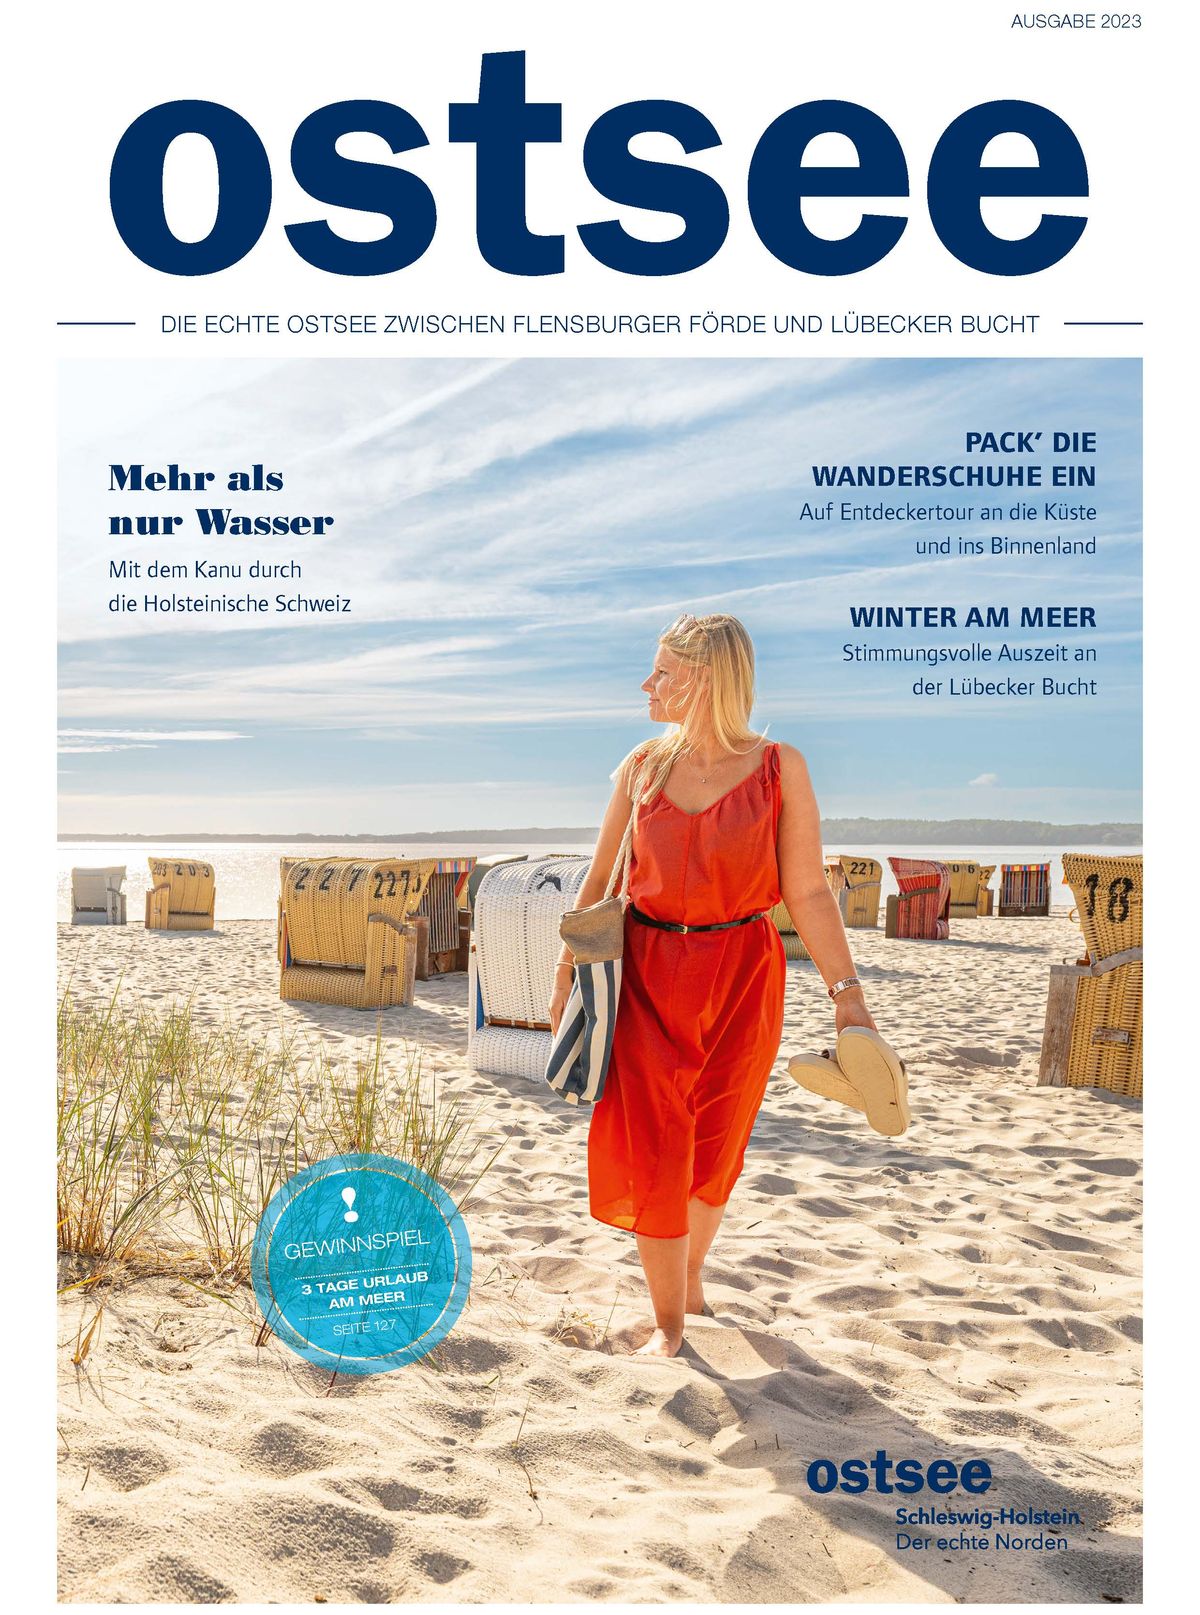 Foto: Das neue "Ostsee Magazin" ist erhältlich.